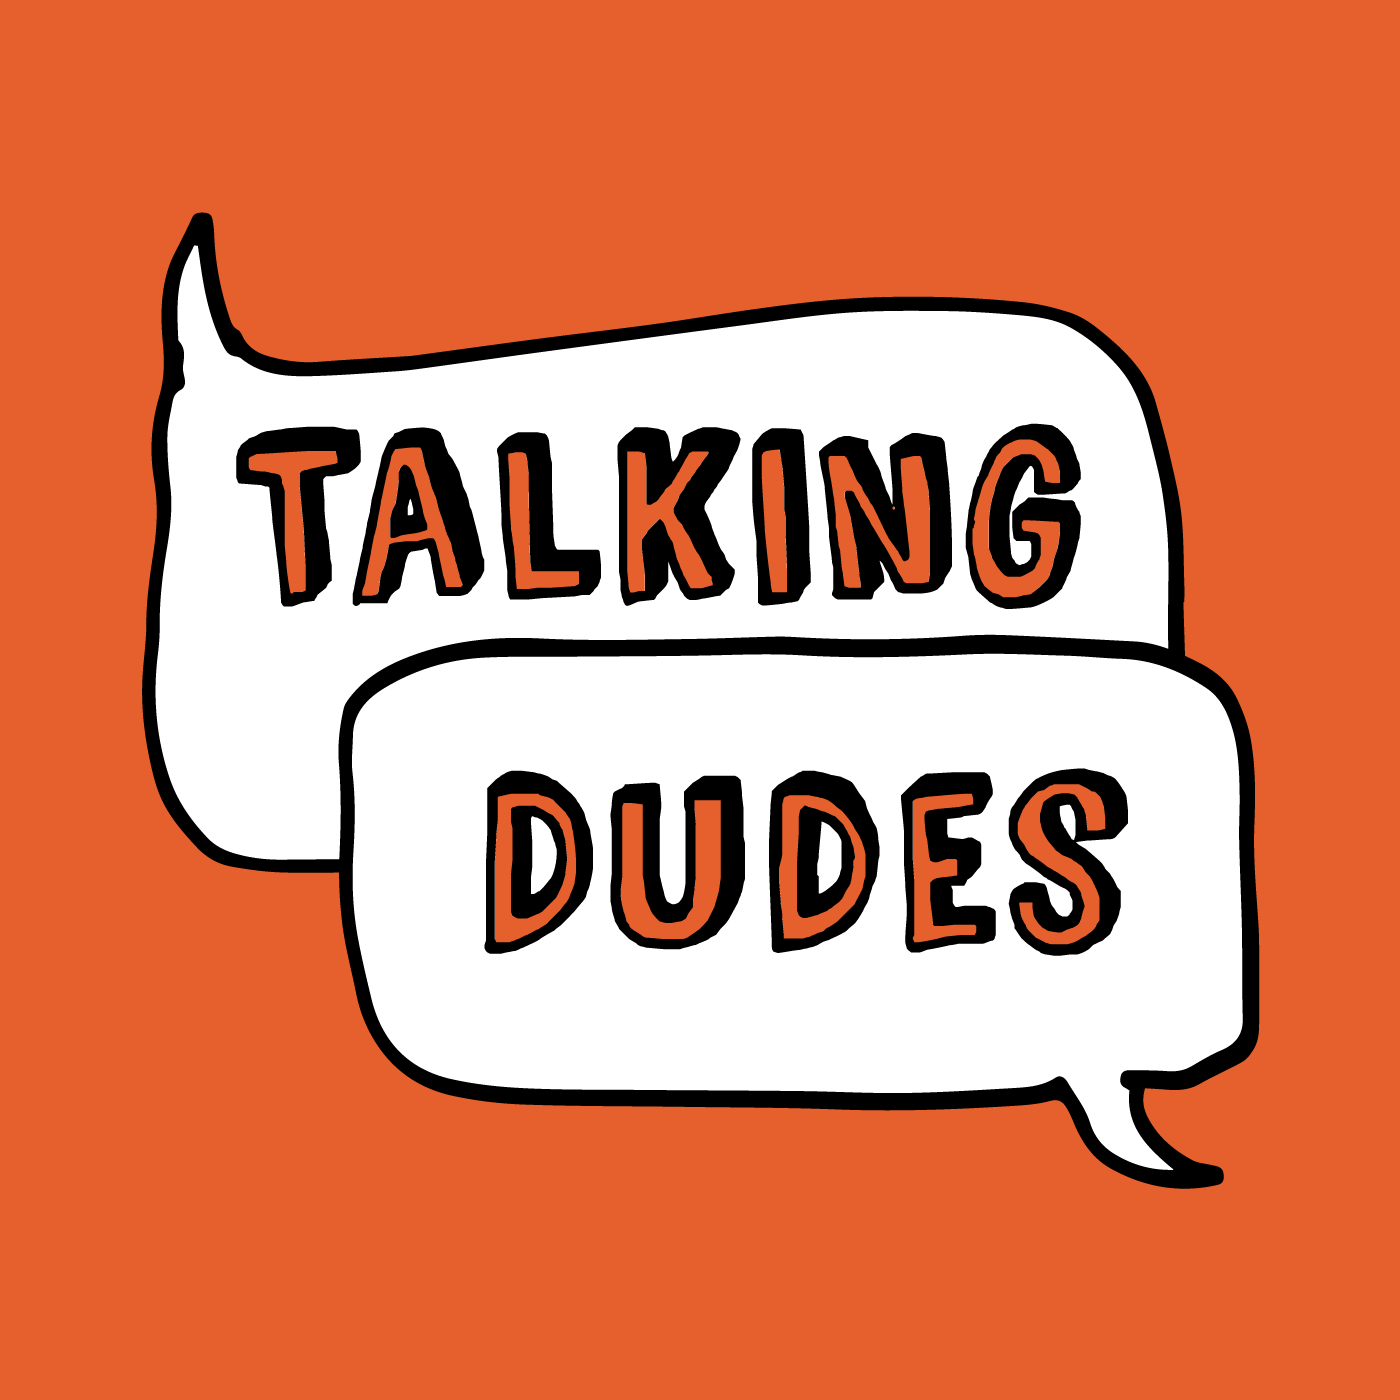 Talking Dudes logo